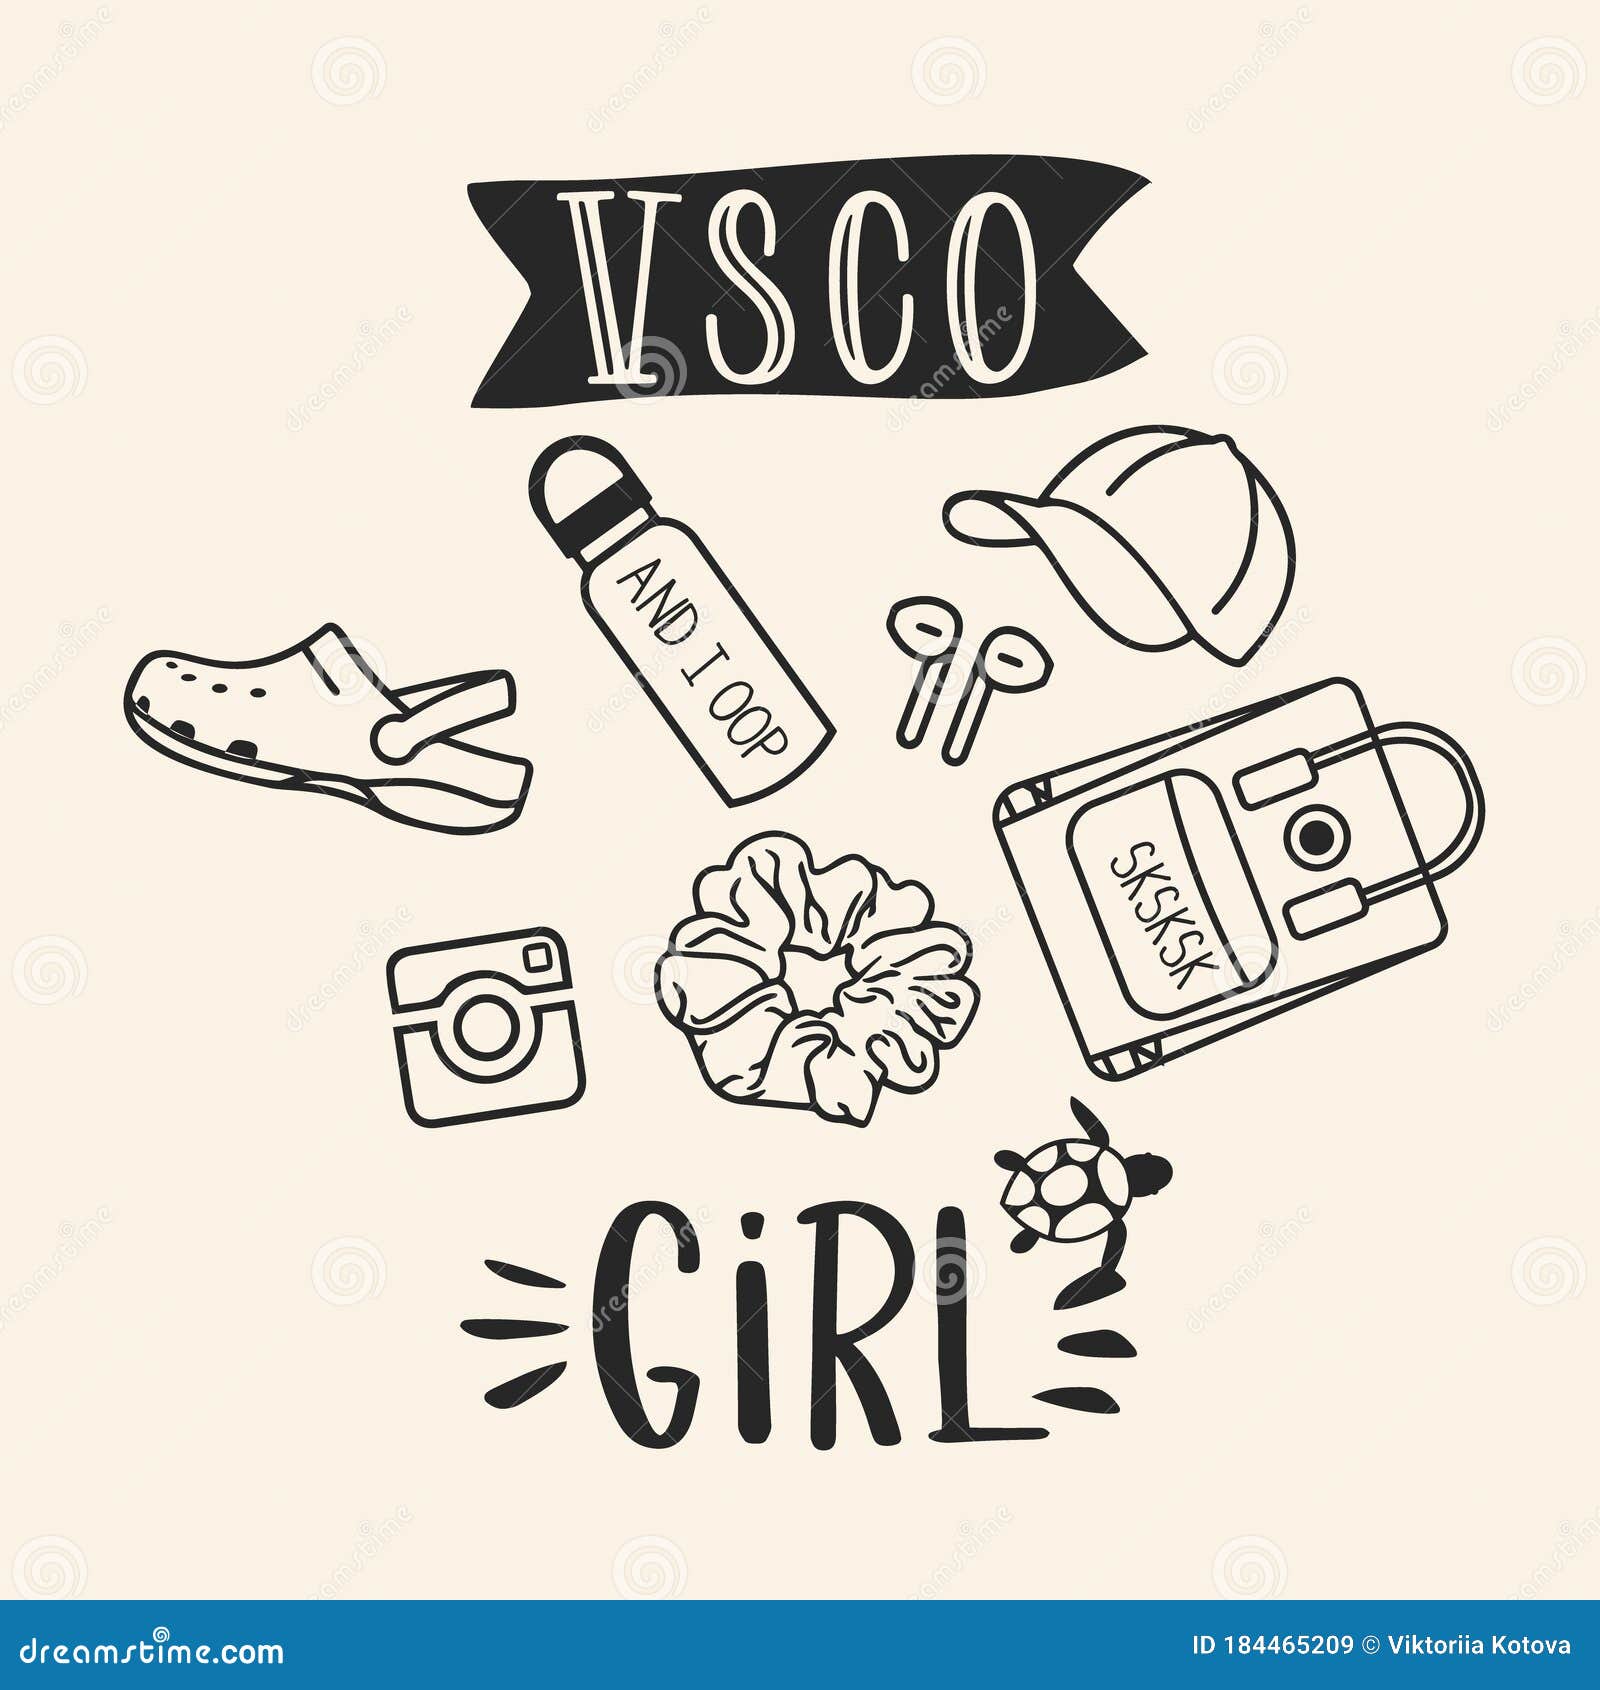 vsco girls, sea turtles, scrunchies and water bottles. trendy shirt  for vsco girls